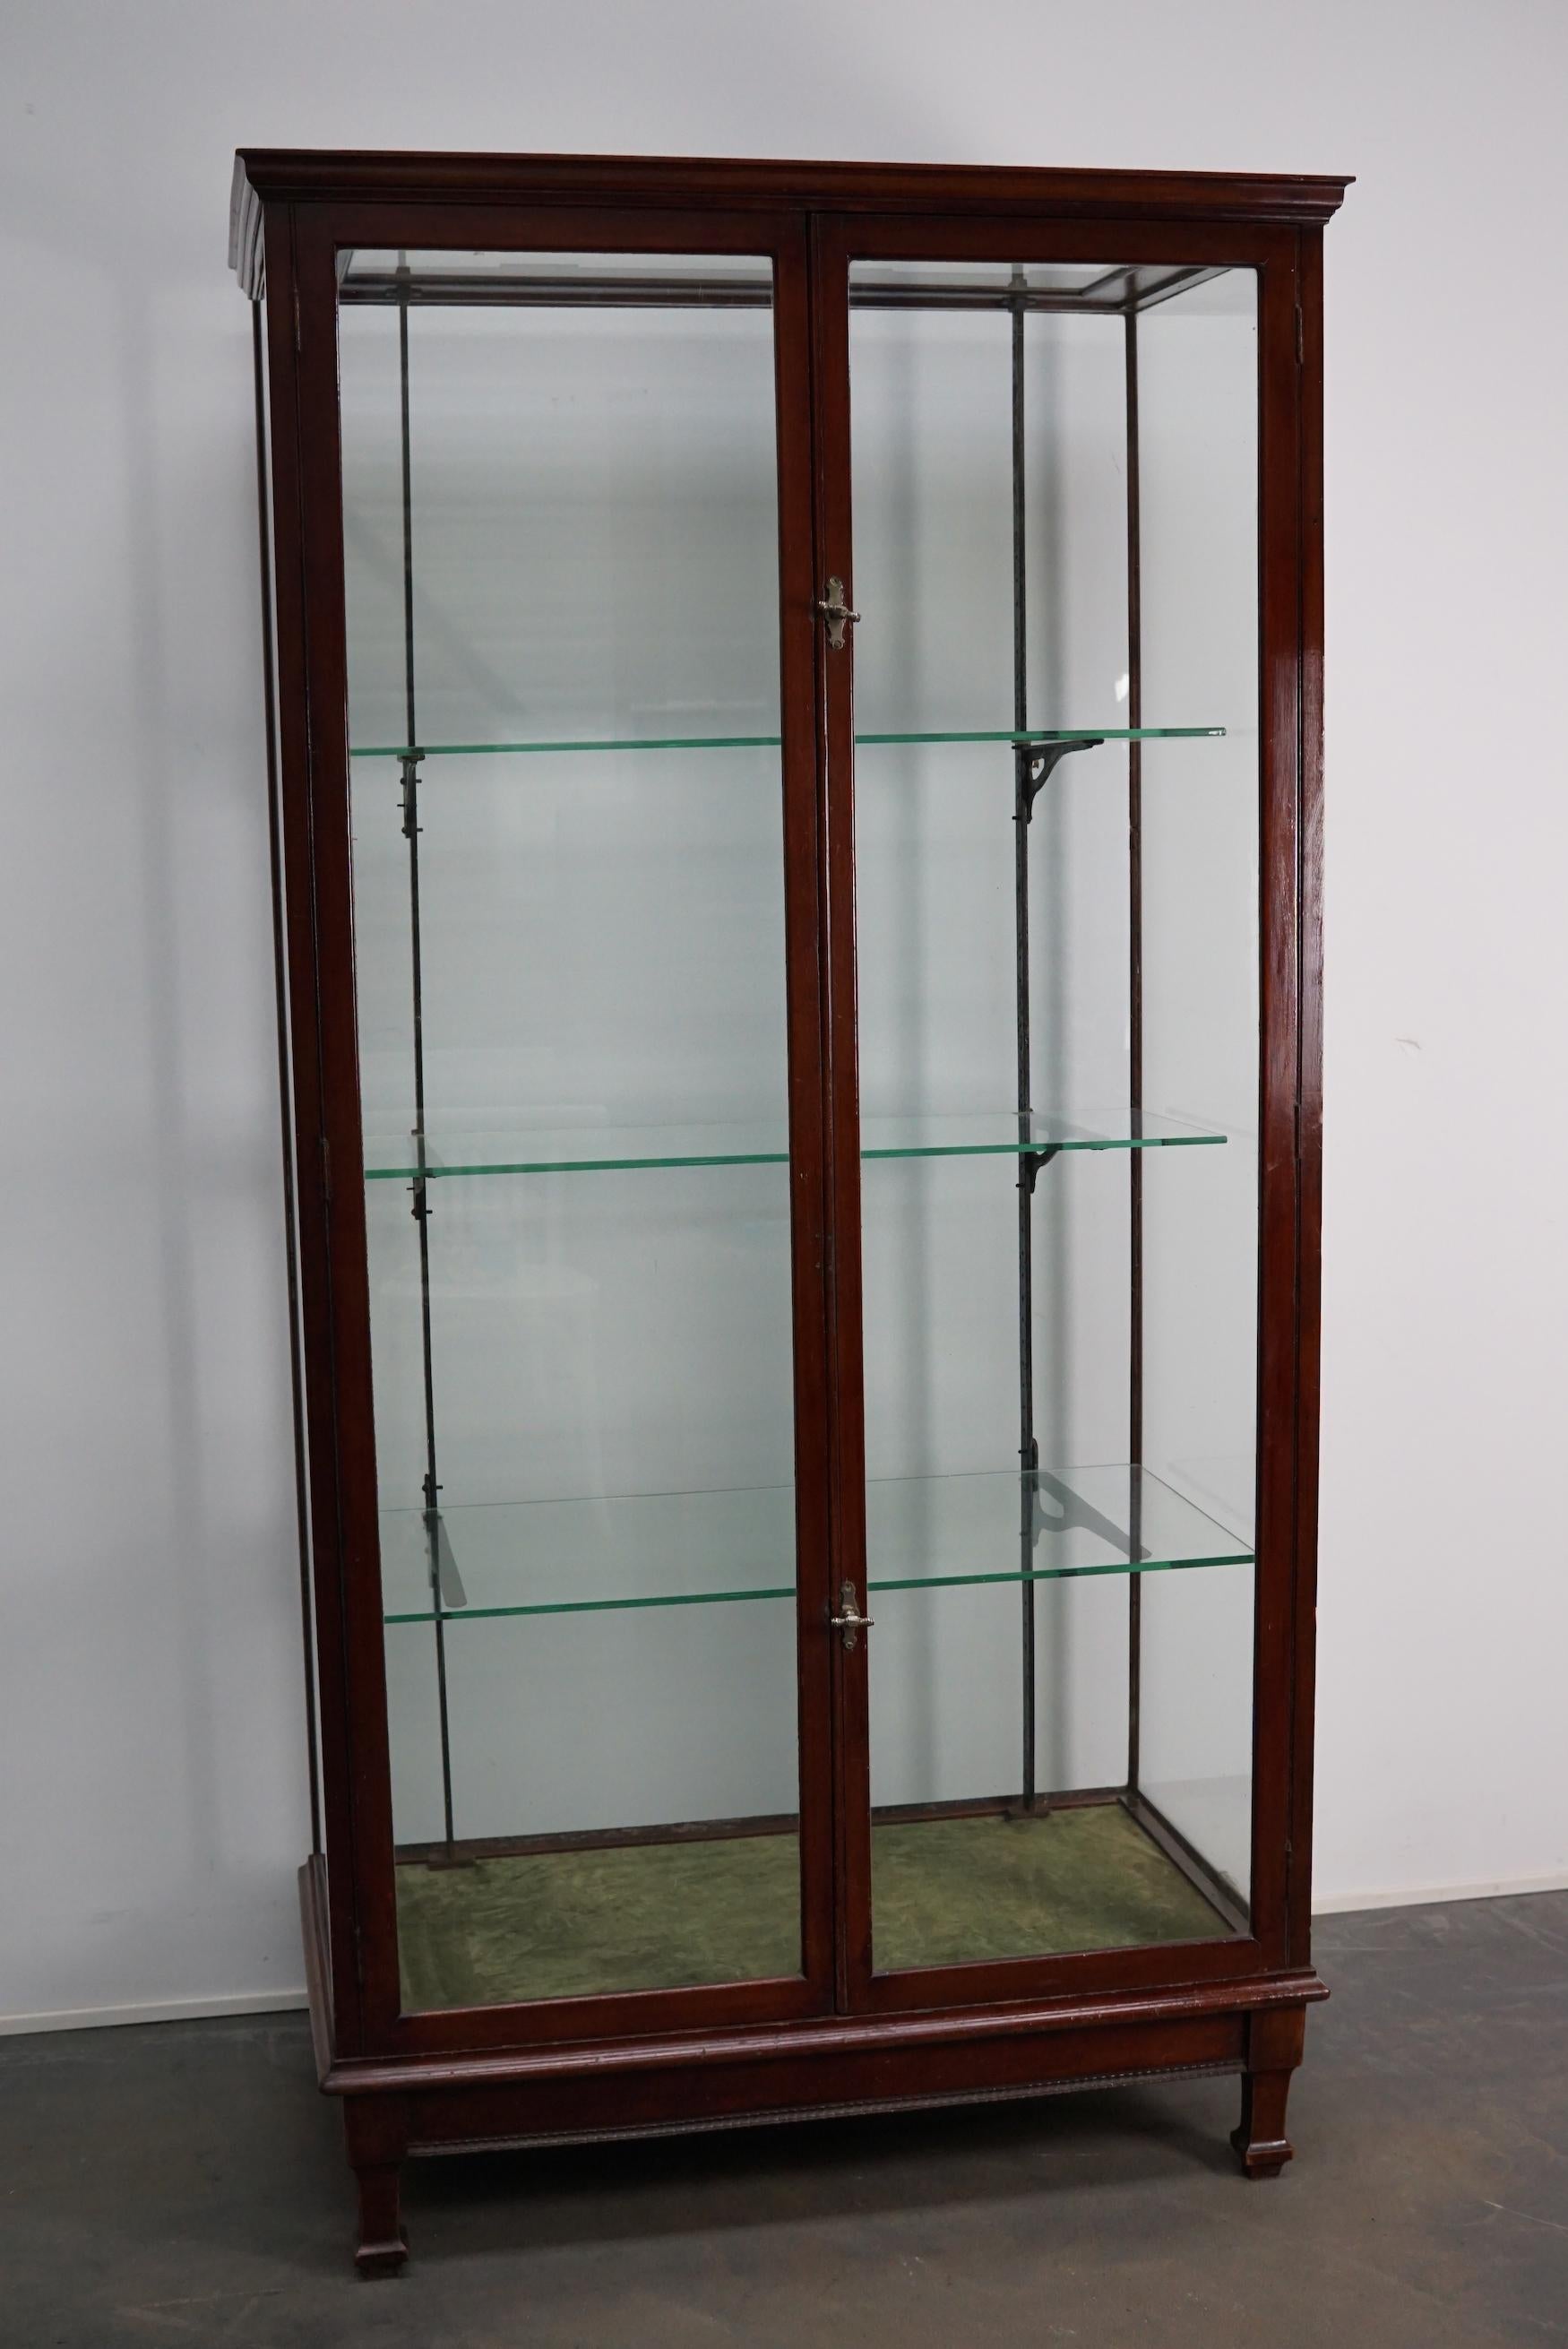 Vitrine victorienne en acajou de qualité musée. Cette grande armoire exceptionnelle a deux portes en verre équipées de poignées d'origine. Il comporte trois étagères sur des supports en fonte. Le sol est recouvert de velours vert.